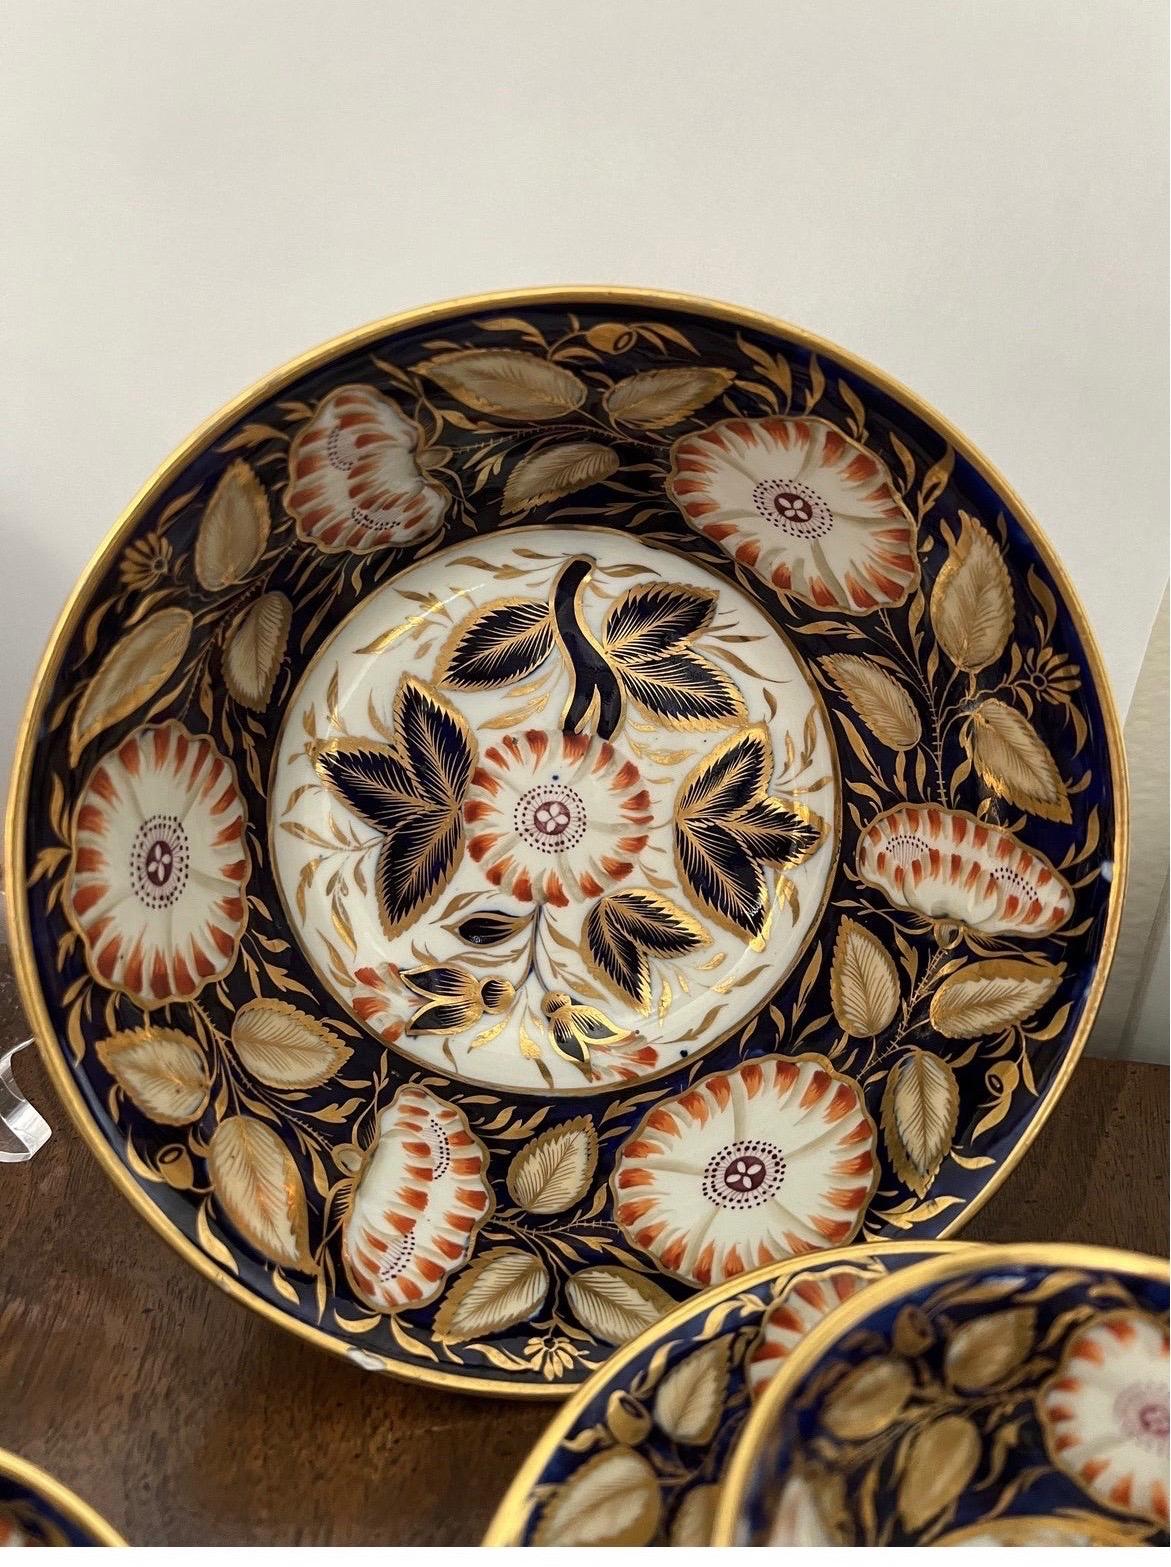 27 pièces, bel ensemble de service à dessert en porcelaine anglaise du 19e siècle Cobalt. 

Malheureusement, je n'ai pas pu identifier le fabricant ou le modèle. Cependant, ils sont d'une qualité et d'une décoration fantastiques.

Inclus :